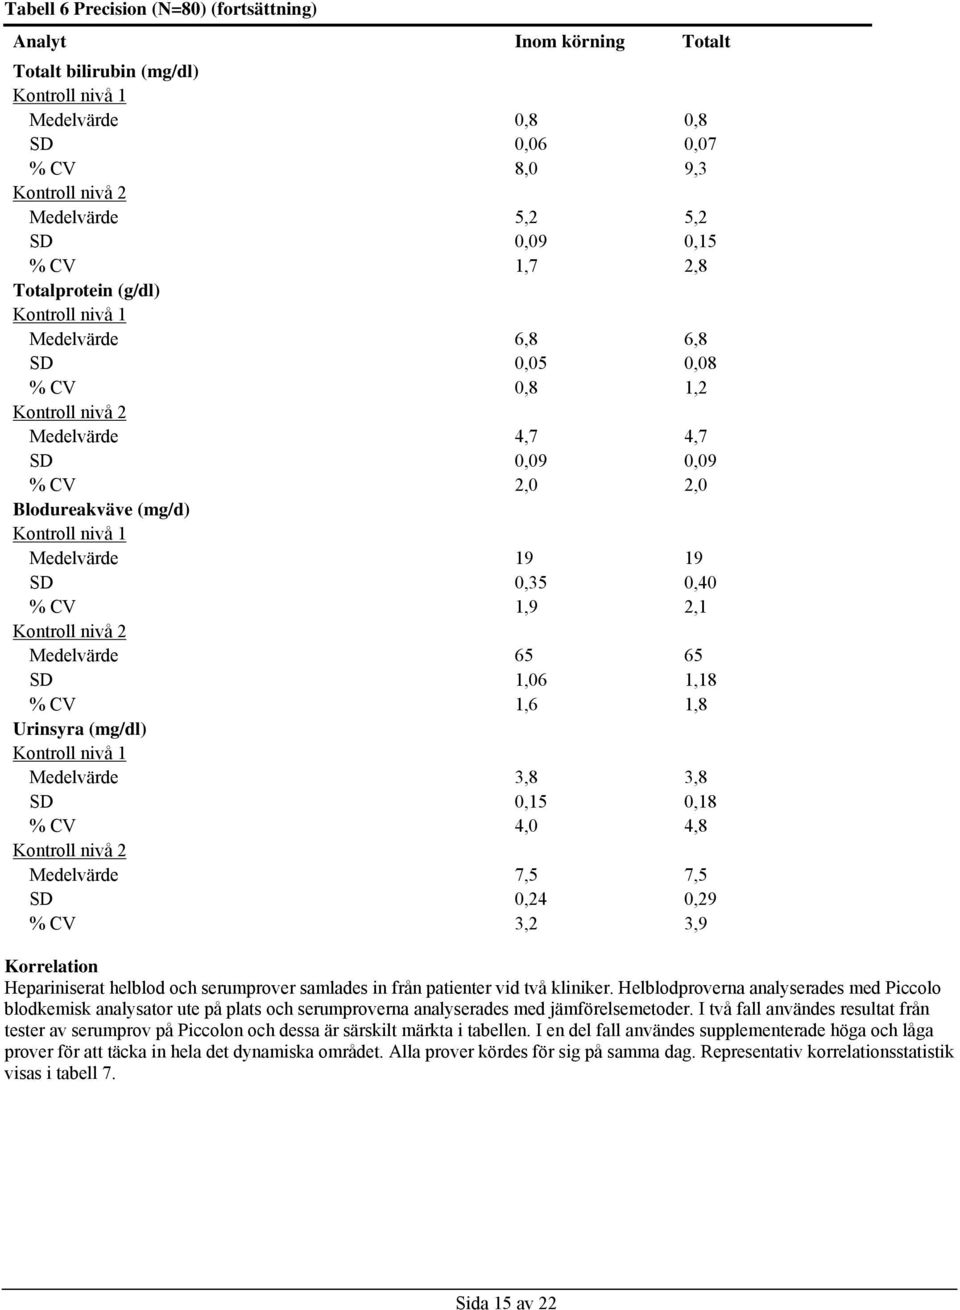 1,8 Urinsyra (mg/dl) Medelvärde 3,8 3,8 SD 0,15 0,18 % CV 4,0 4,8 Medelvärde 7,5 7,5 SD 0,24 0,29 % CV 3,2 3,9 Korrelation Hepariniserat helblod och serumprover samlades in från patienter vid två